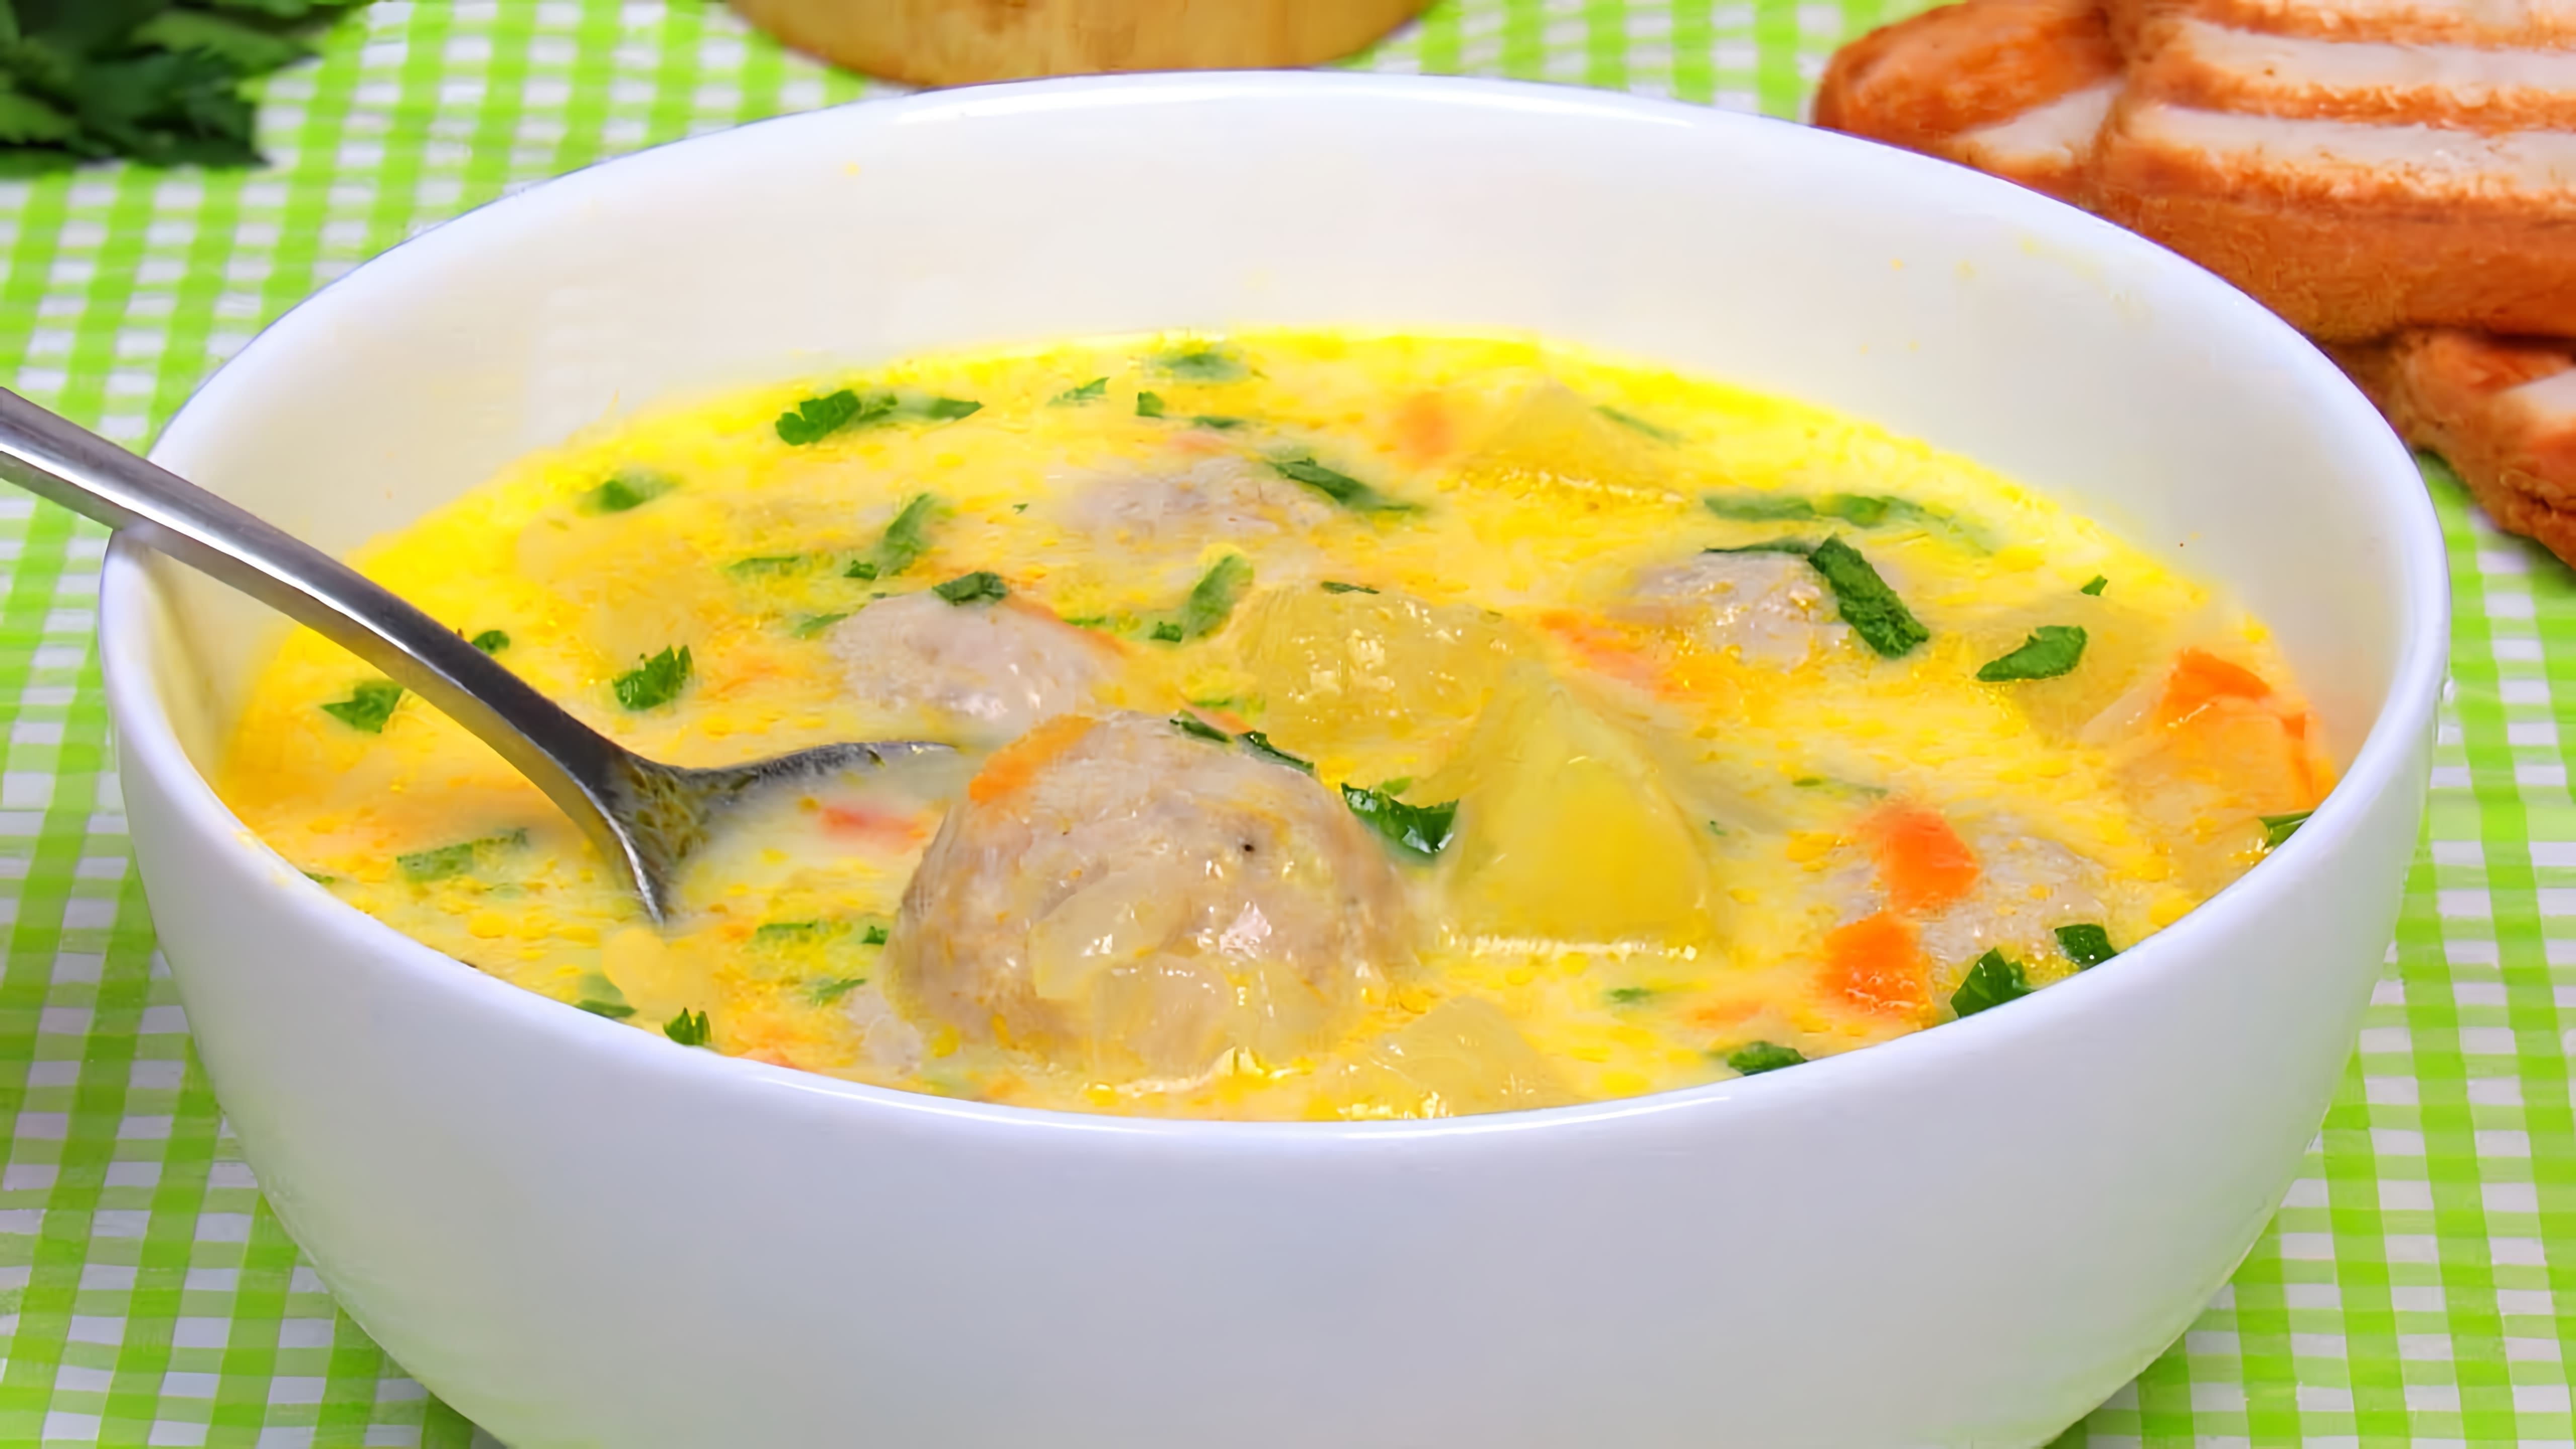 В этом видео демонстрируется процесс приготовления сырного супа с фрикадельками